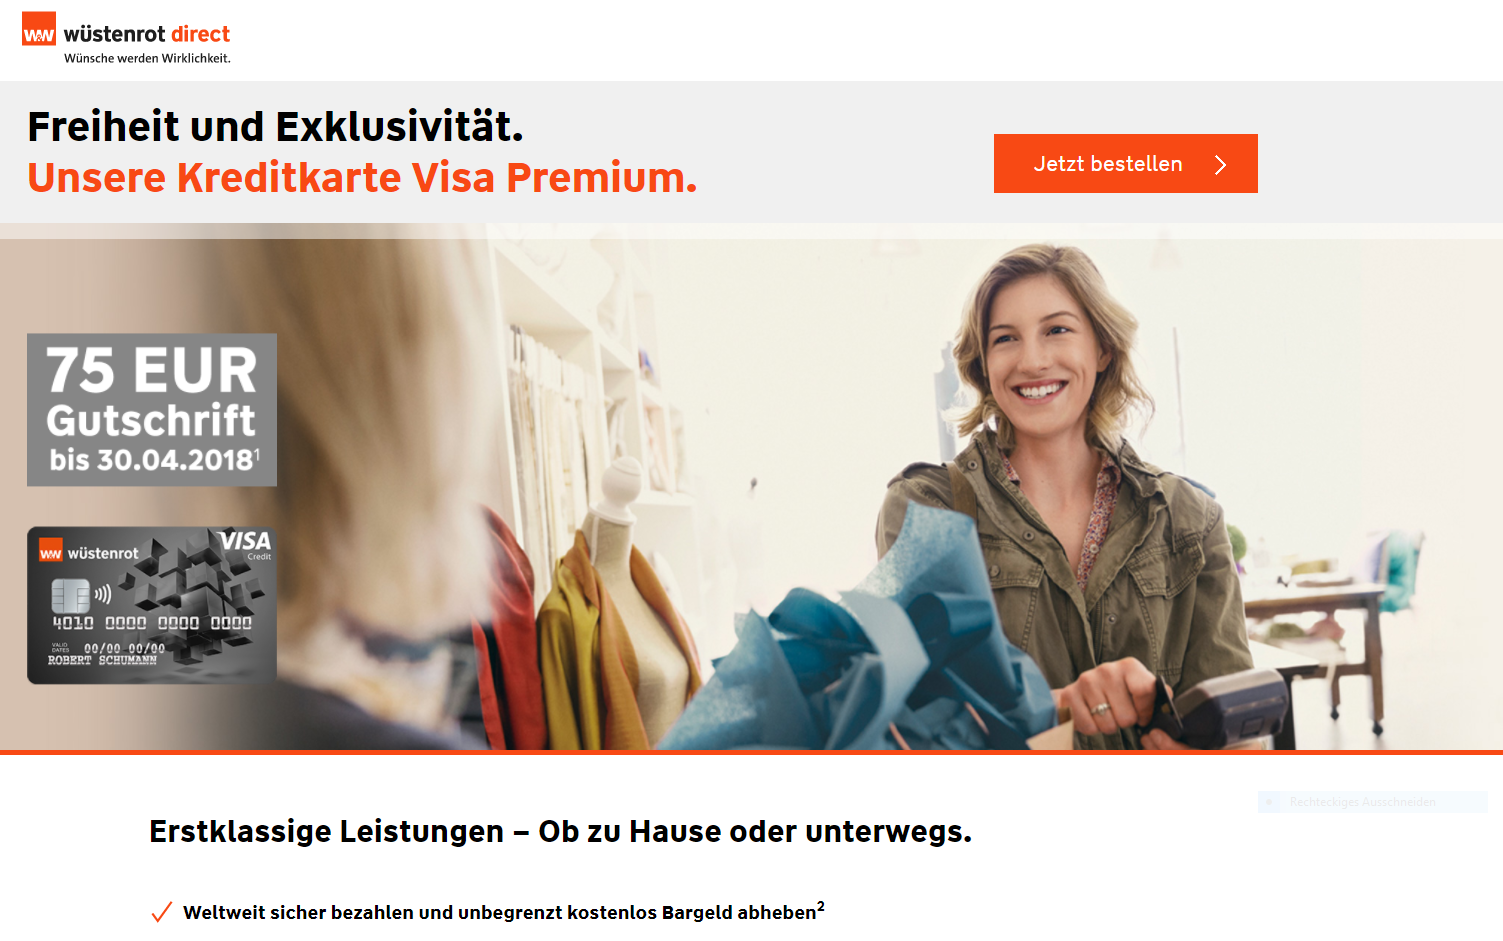 Wüstenrot & Württembergische Visa Premium Kreditcard